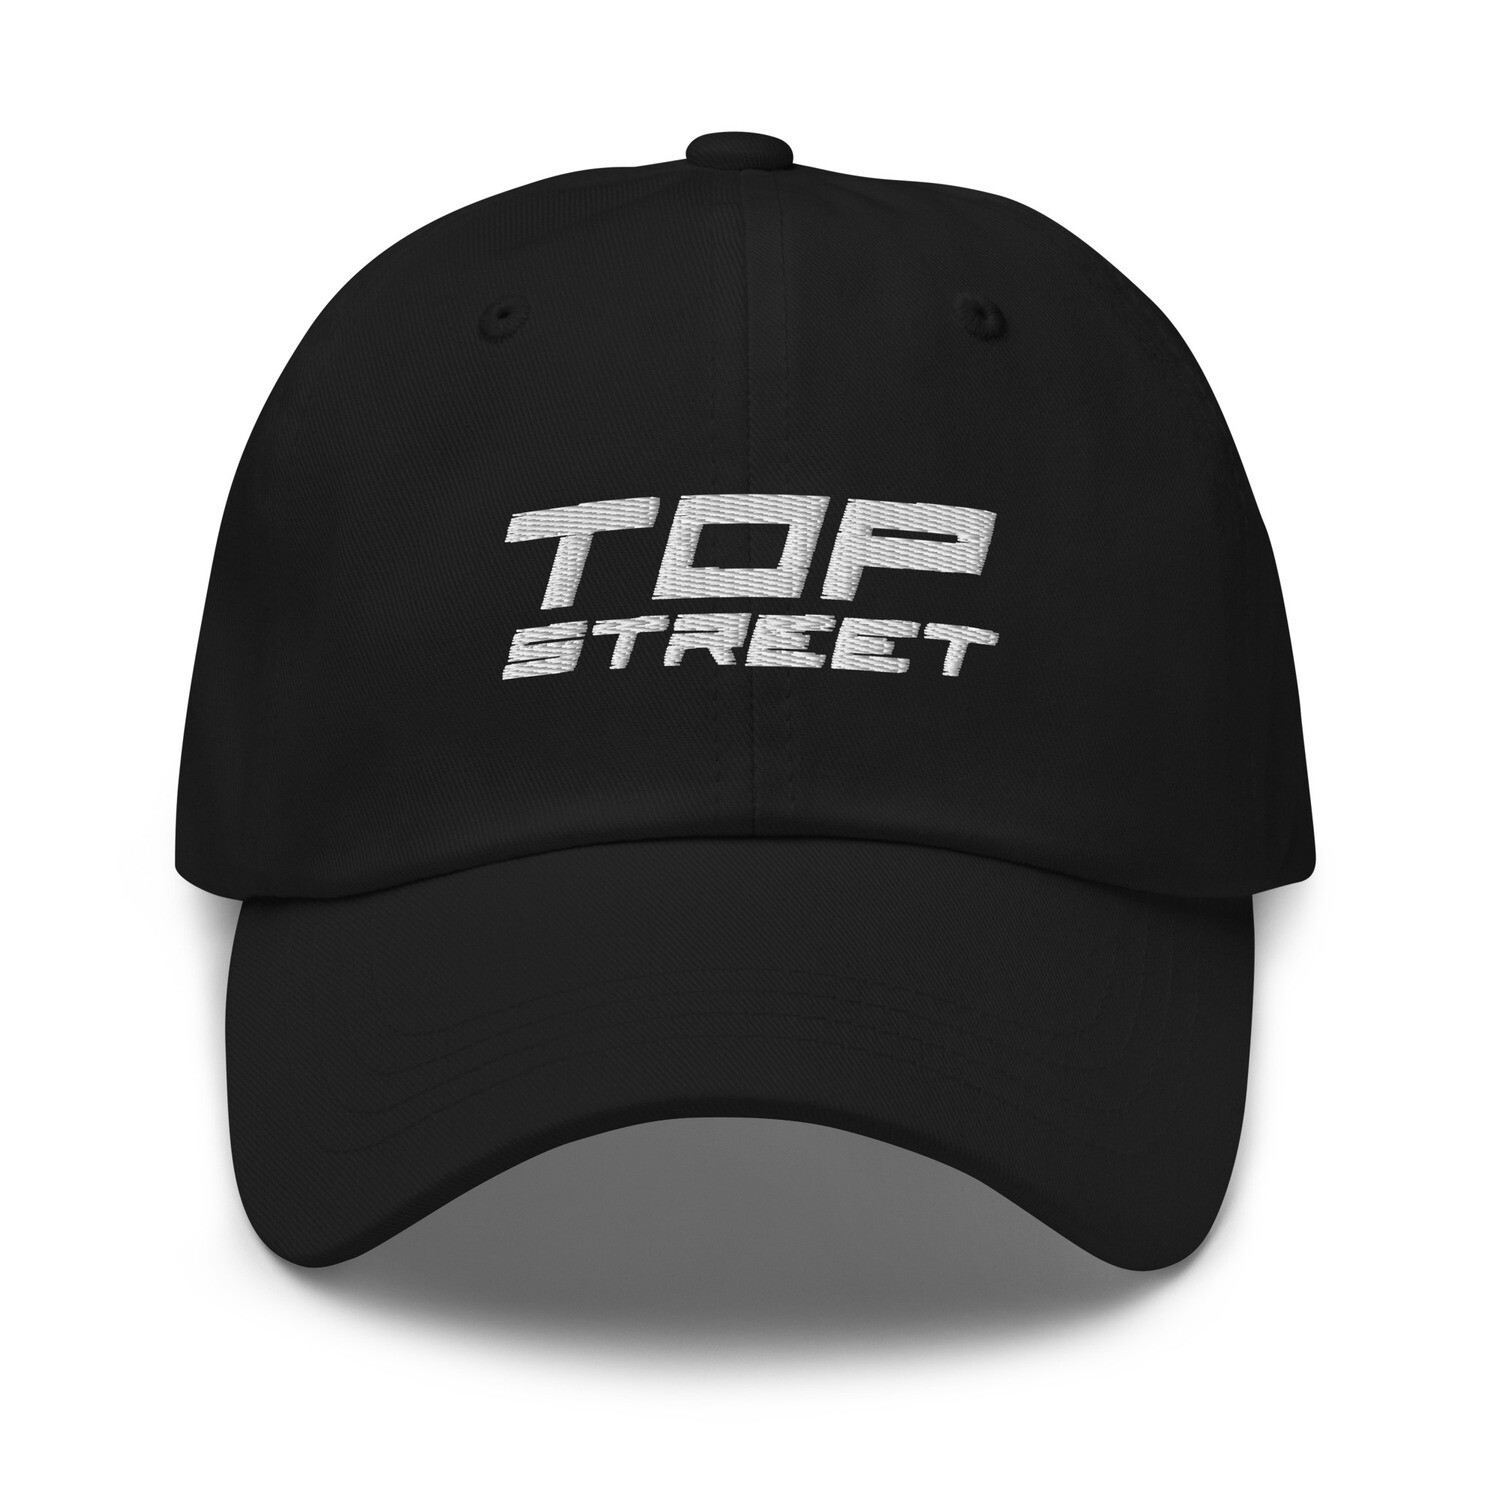 Top Street - Hat